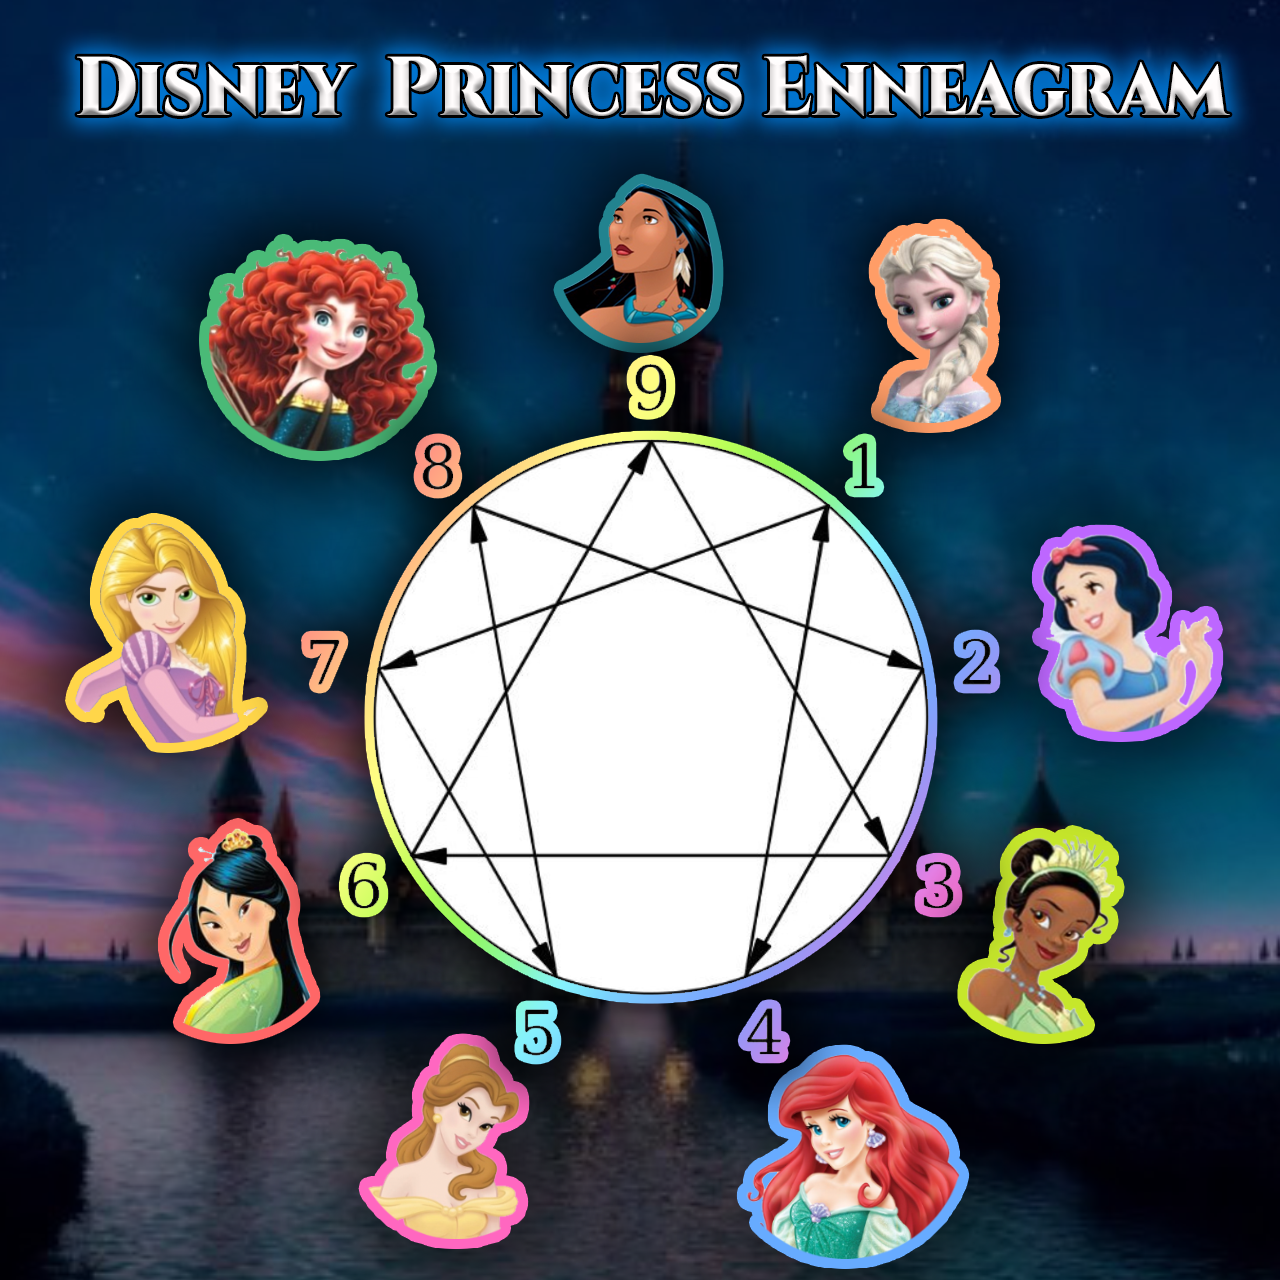 disney characters enneagram enneagram enneagram 9 enneagram type 3.